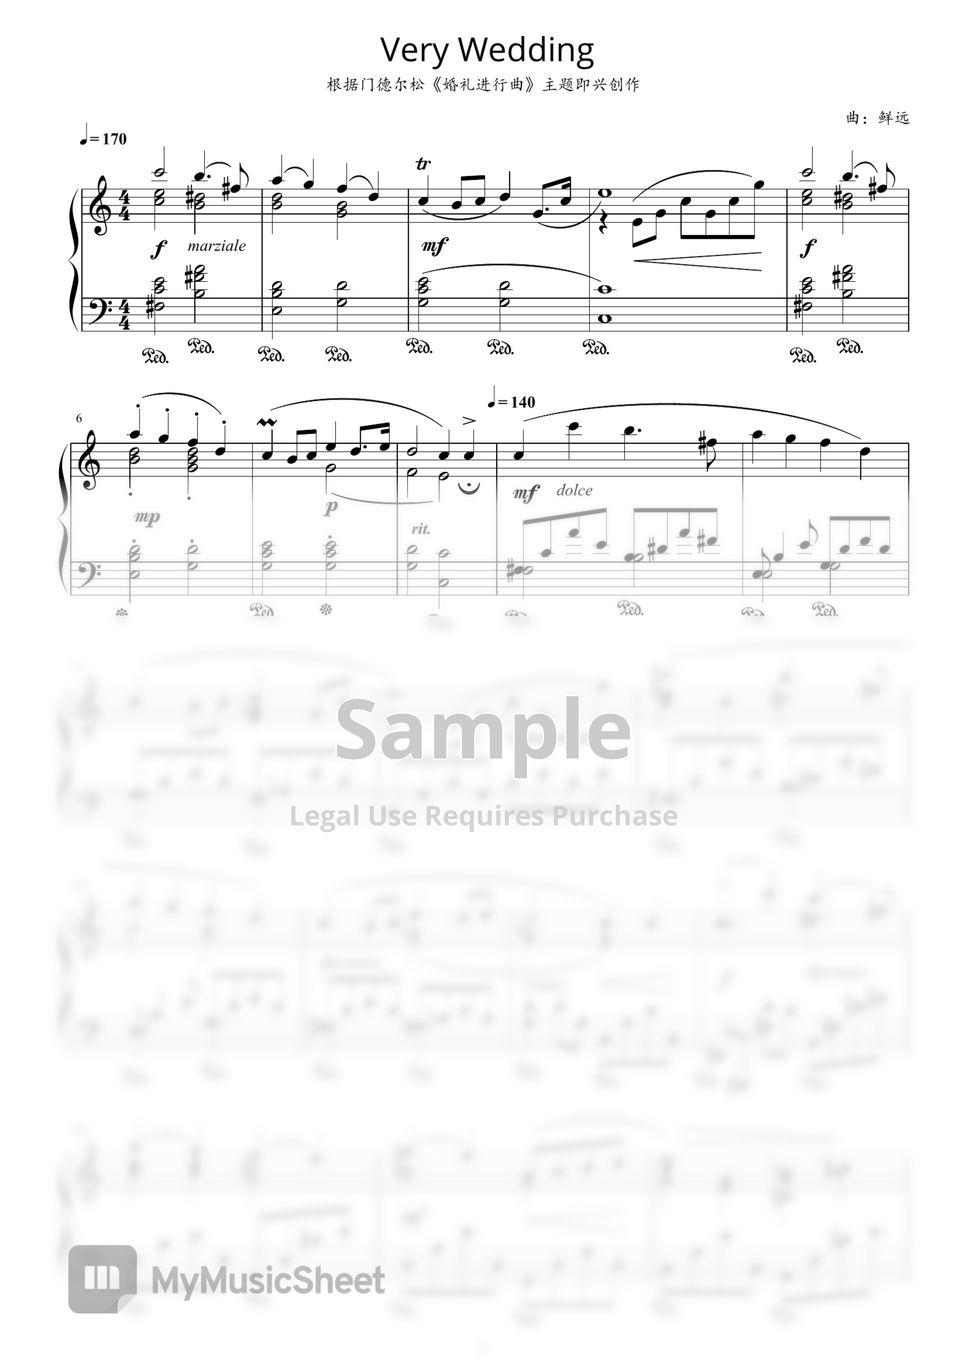 Felix Mendelssohn - Very Wedding, originally Mendelssohn's Wedding March by Xian Yuan - 鲜远